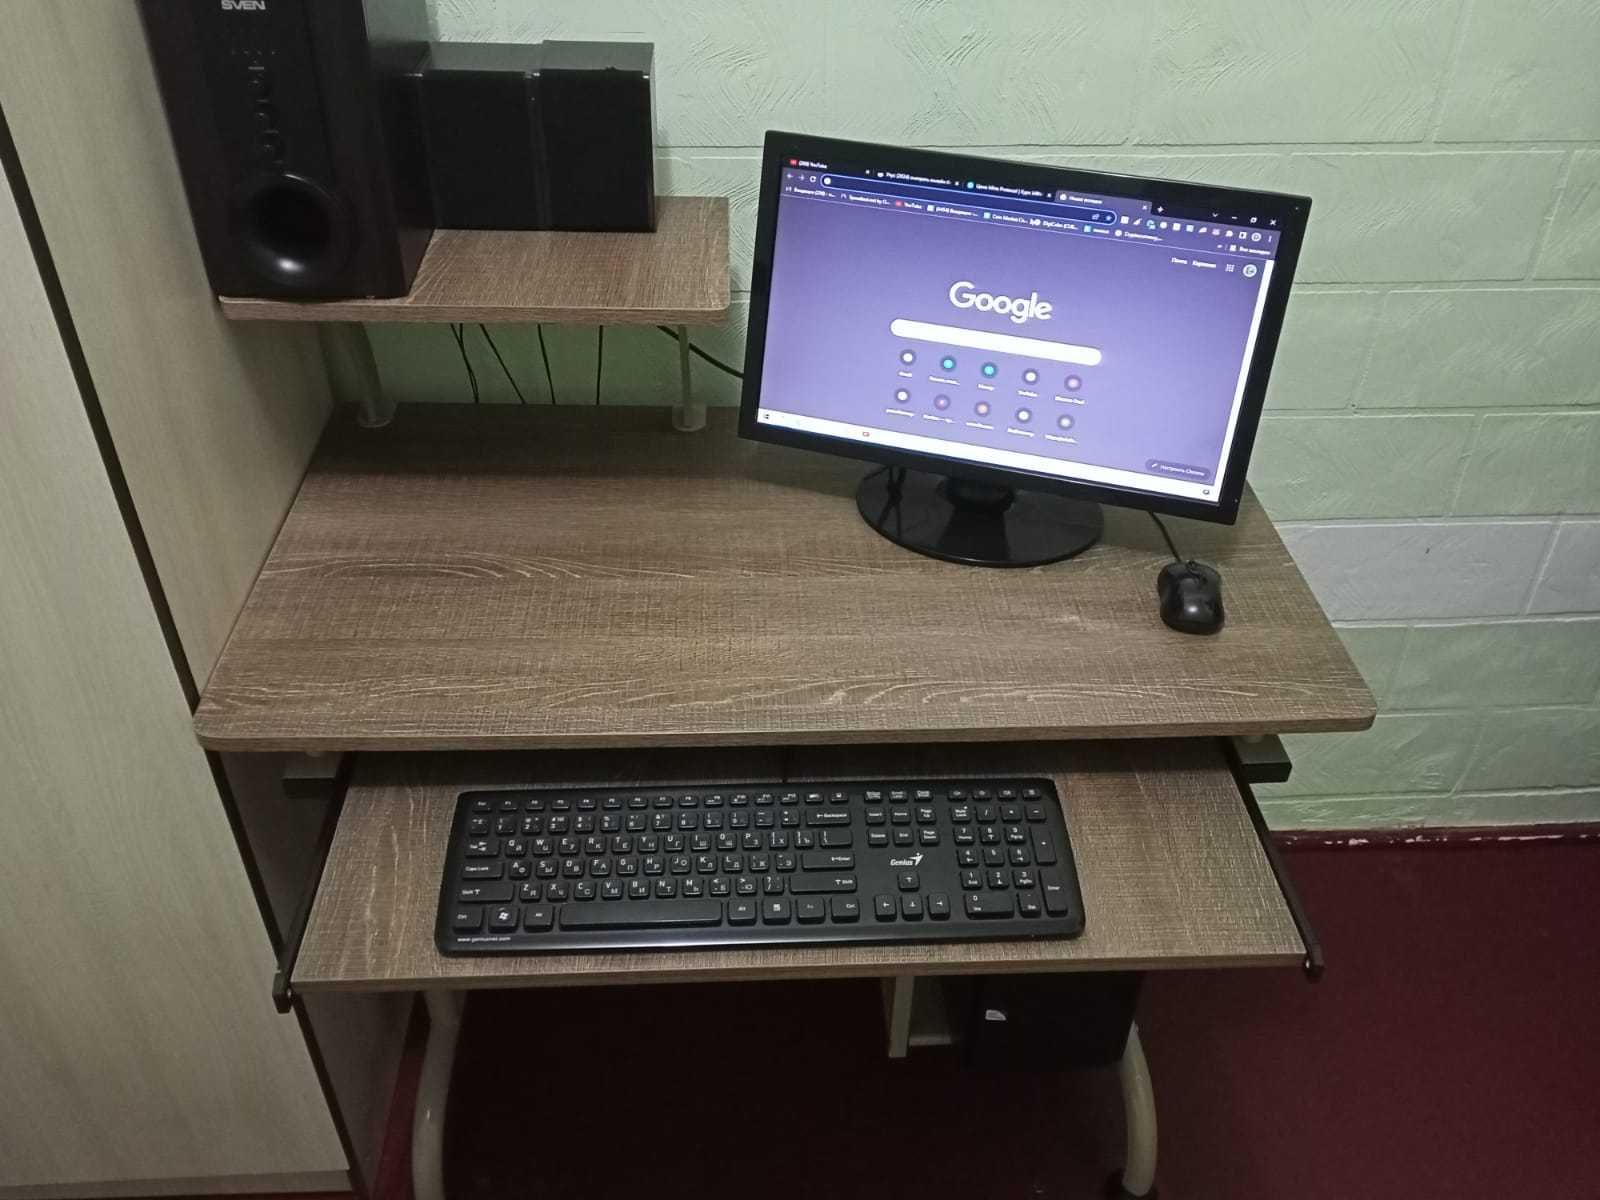 Компьютерный комплект продается вместе со столом.